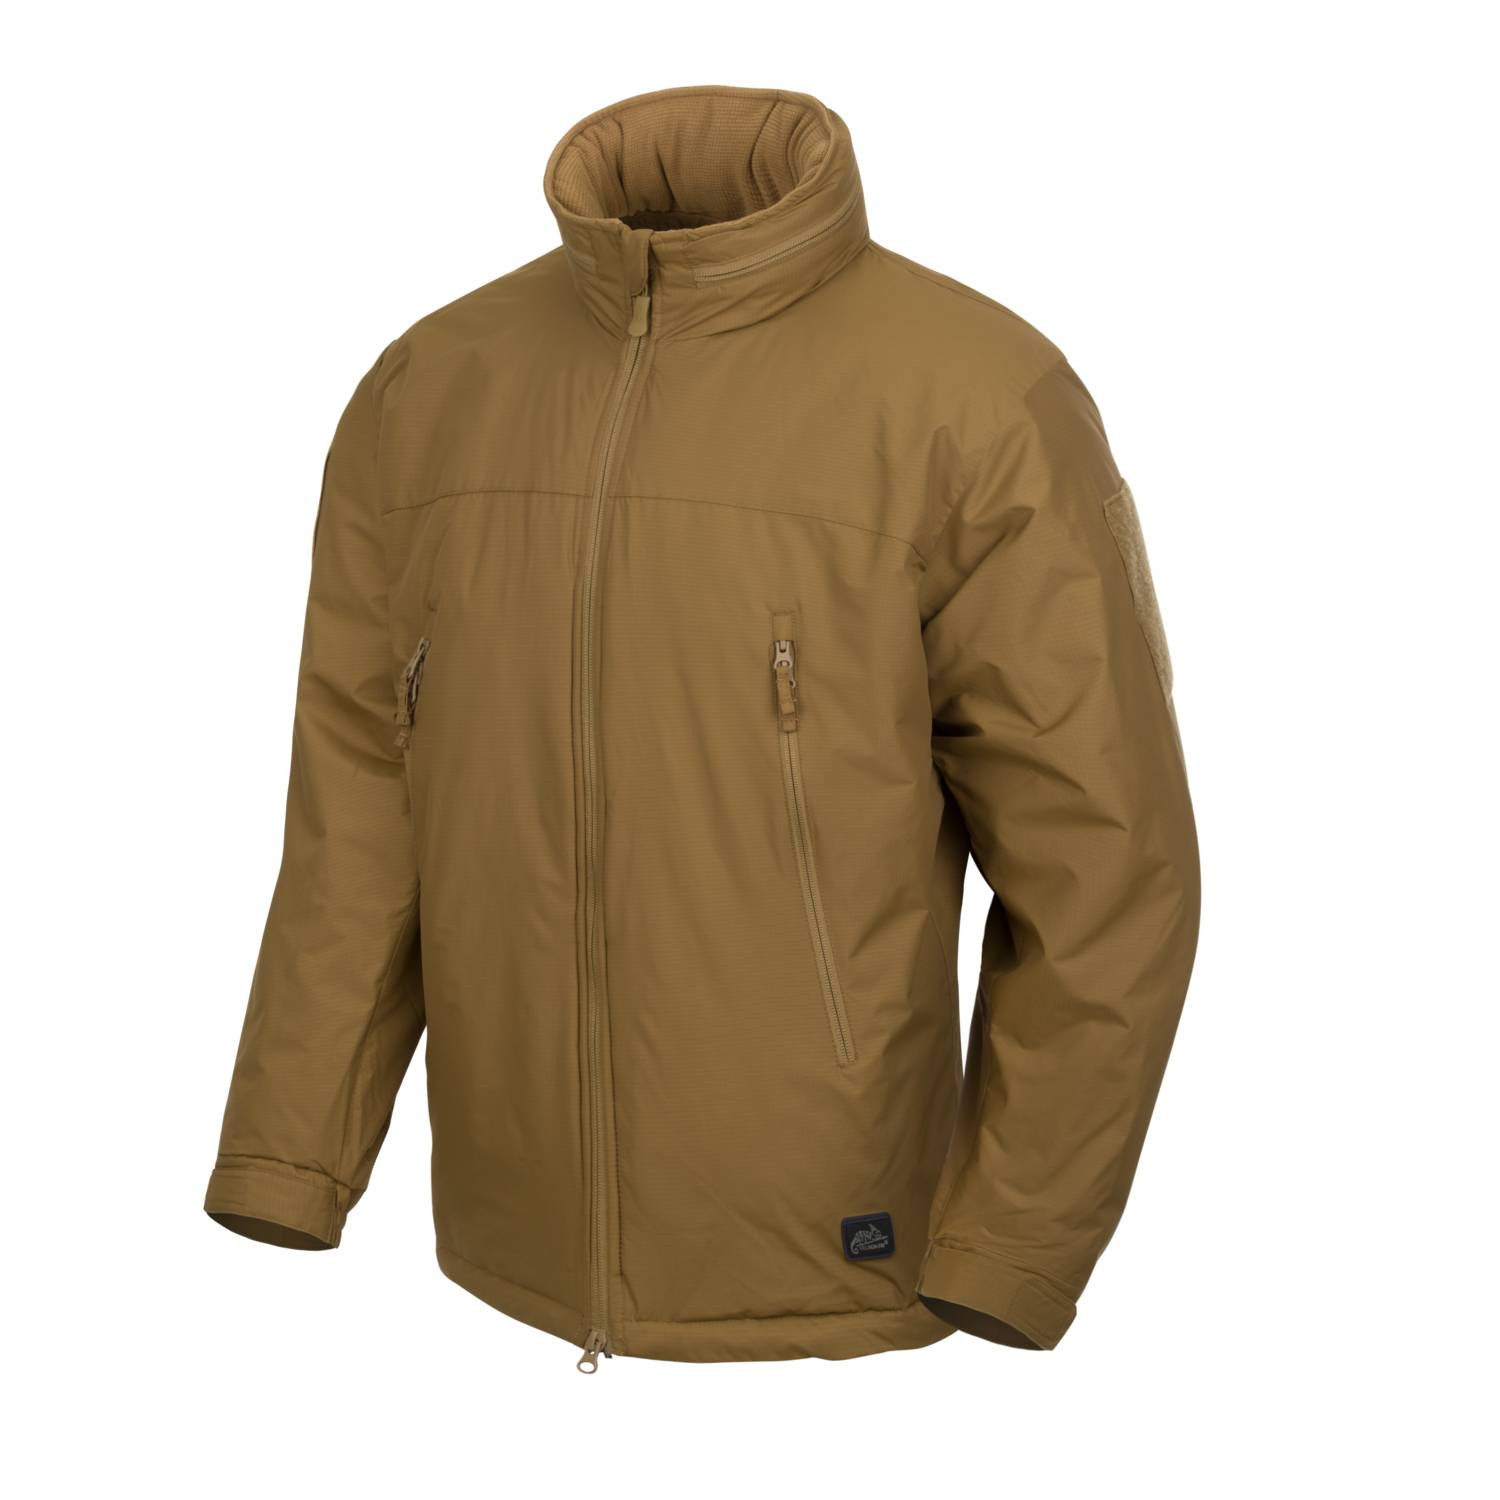 LEVEL 7 Lightweight Winter Jacket   Climashield® Apex g